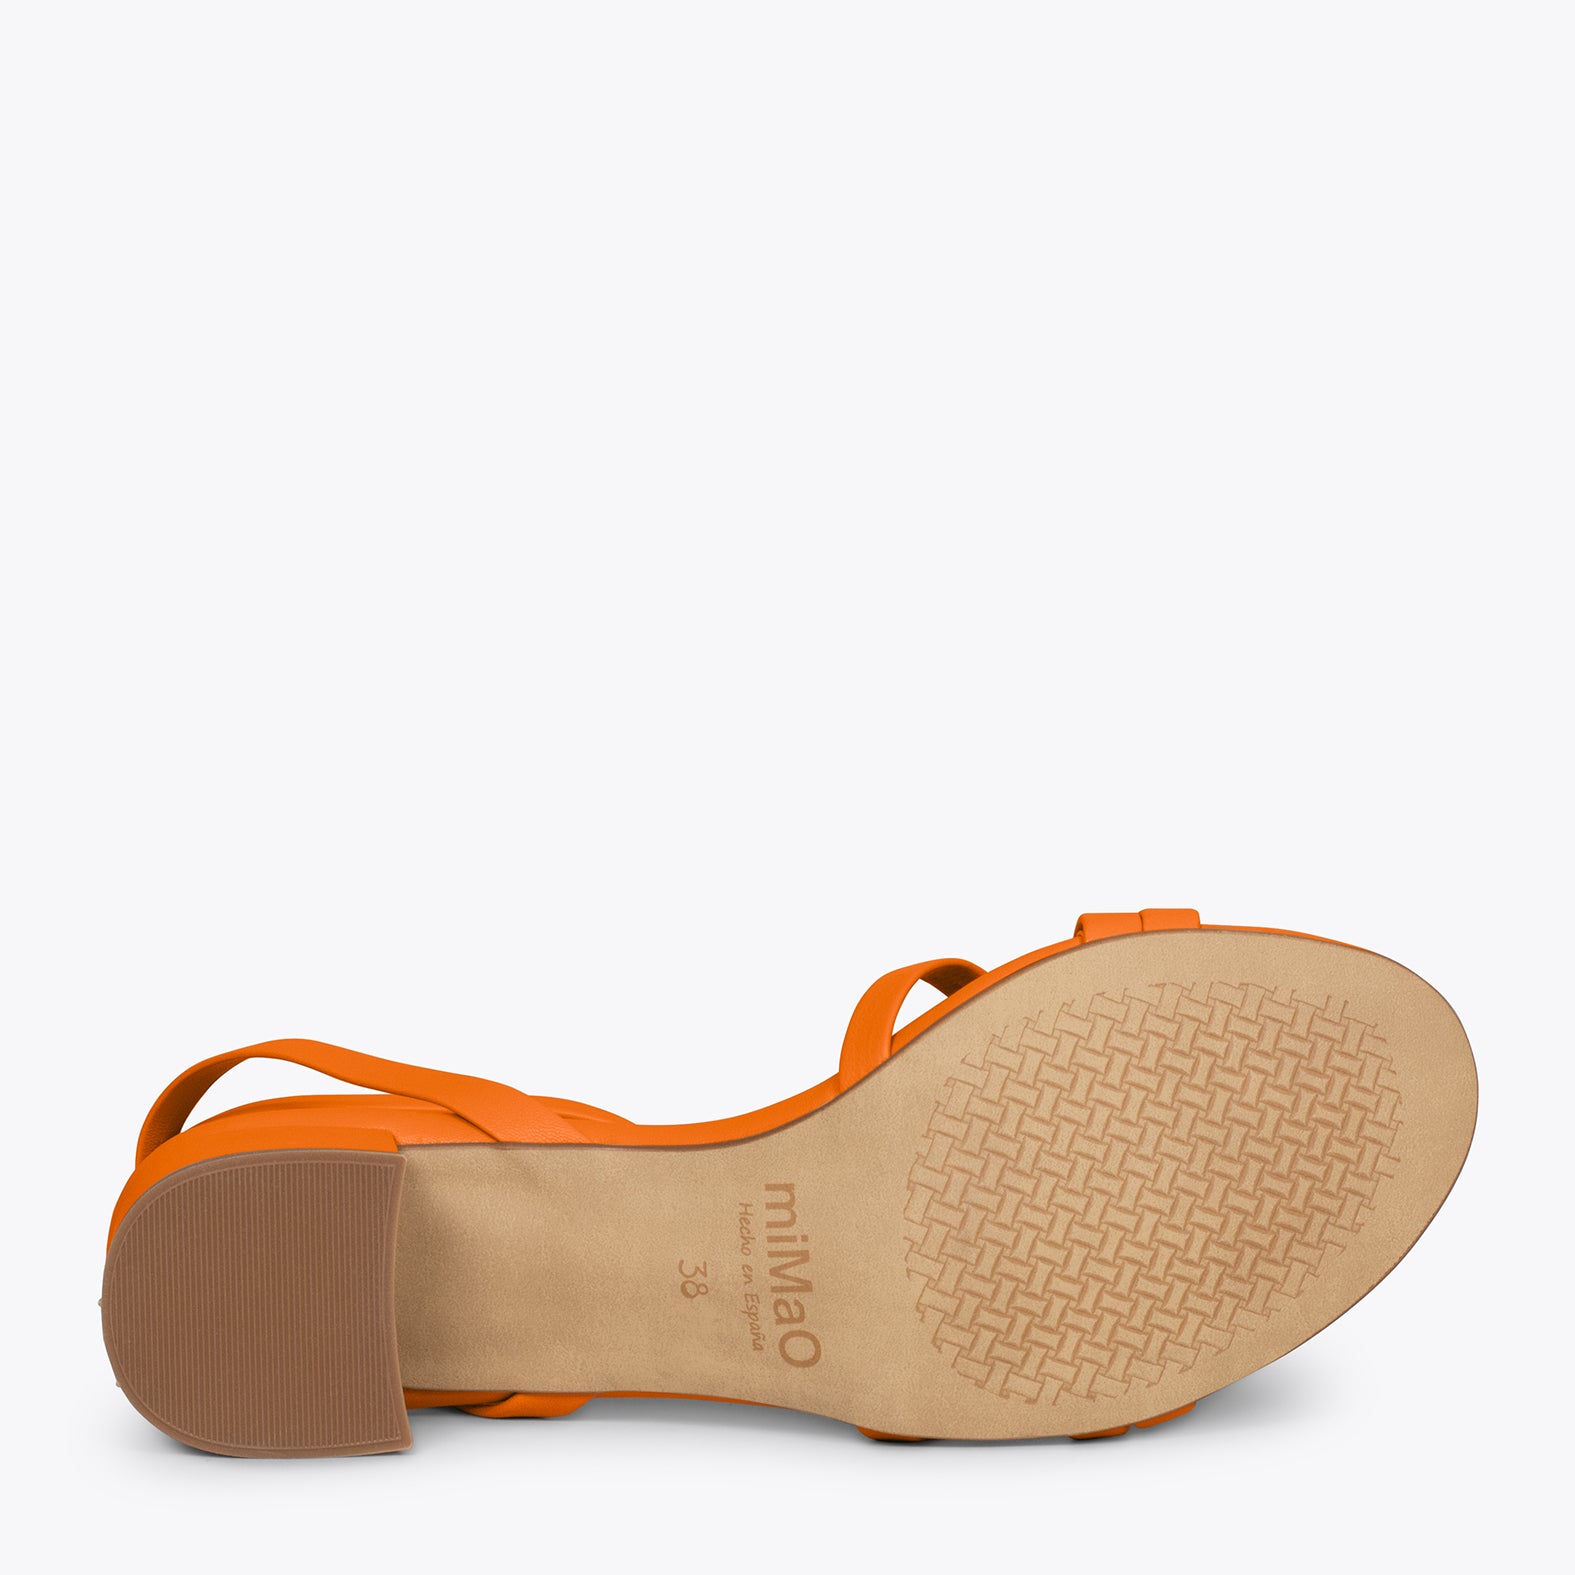 VIENA – ORANGE sandals with straps